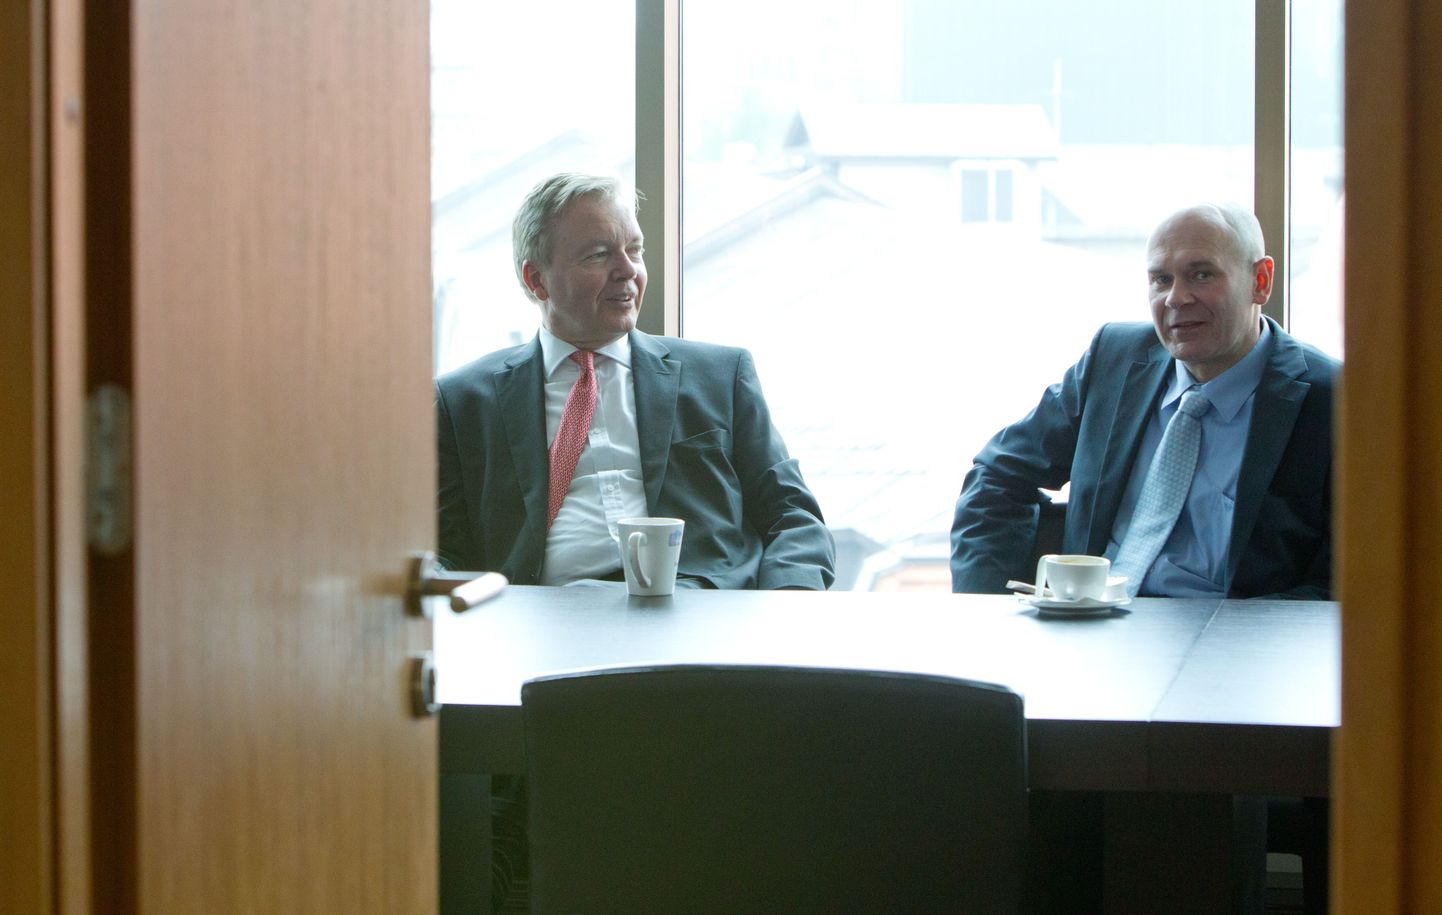 Trigoni juht Joakim Helenius (vasakul) ja Ingmani investeerimisfirma juht Peter Ingman kolm aastat tagasi, kui Ingman alustas Trigoni piimandusärisse investeerimist.